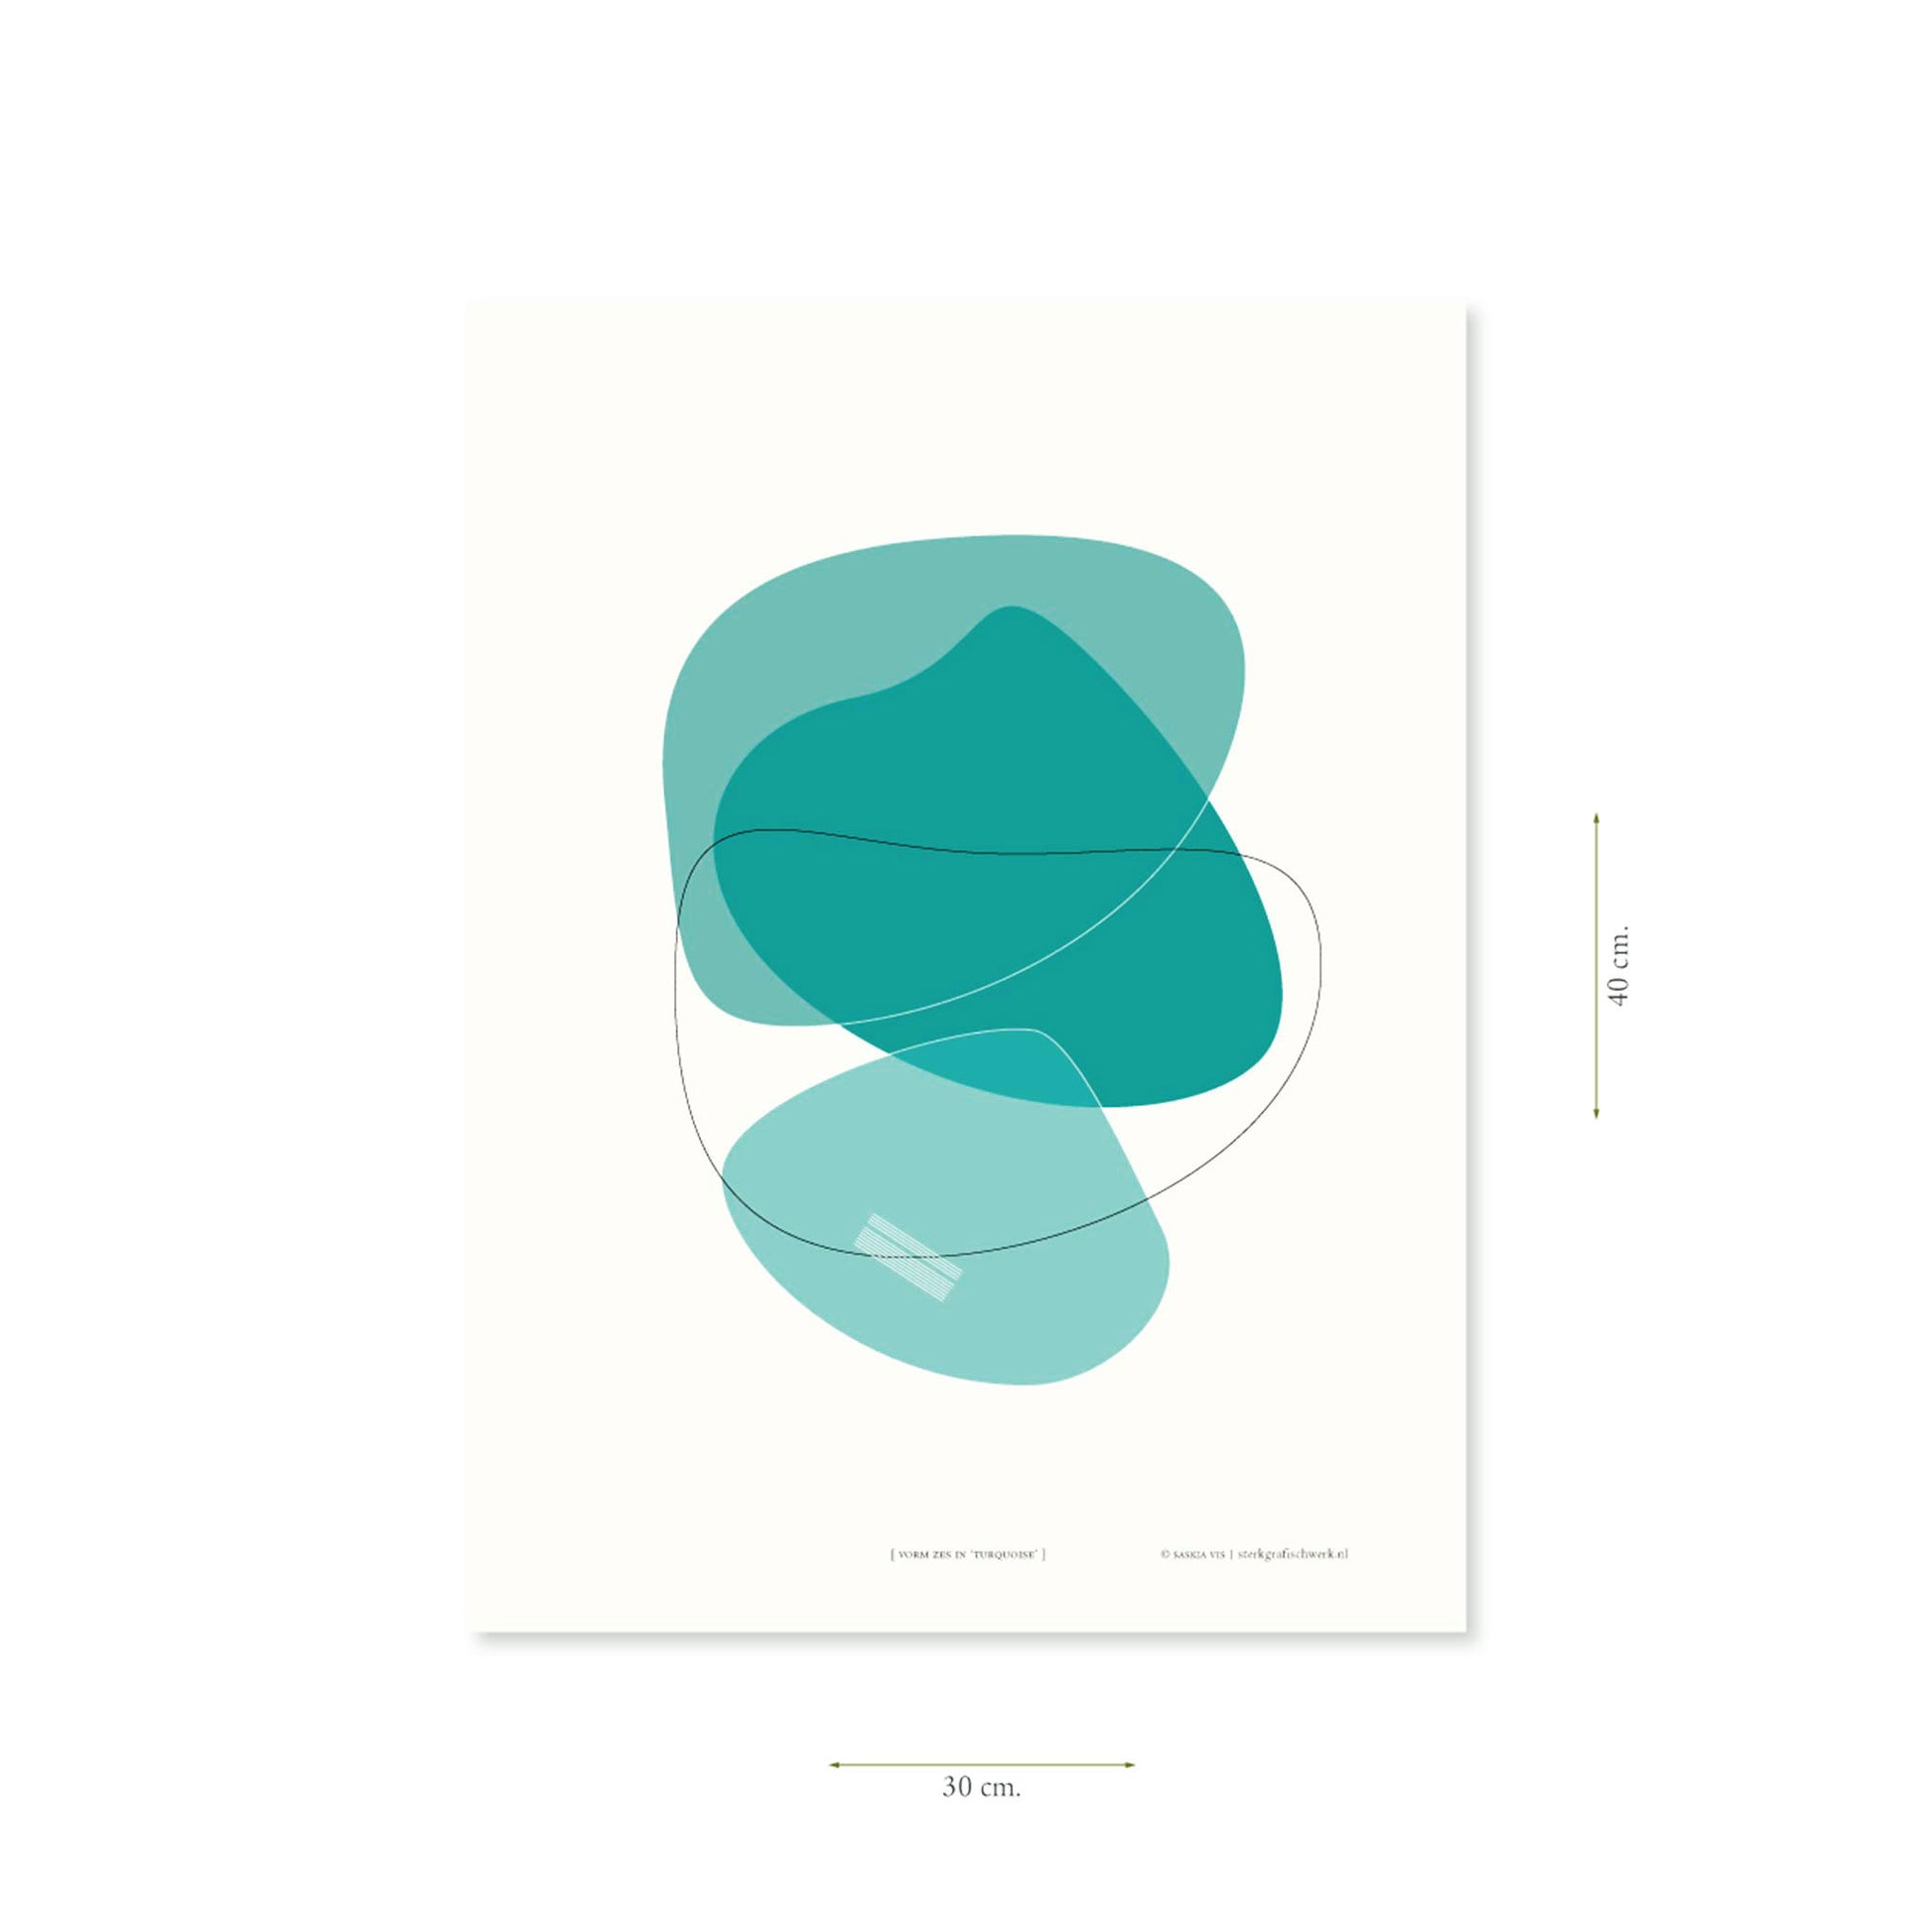 Productafbeelding, poster "vorm zes in turquoise", met aanduiding van het formaat erop weergegeven 30 x 40 cm